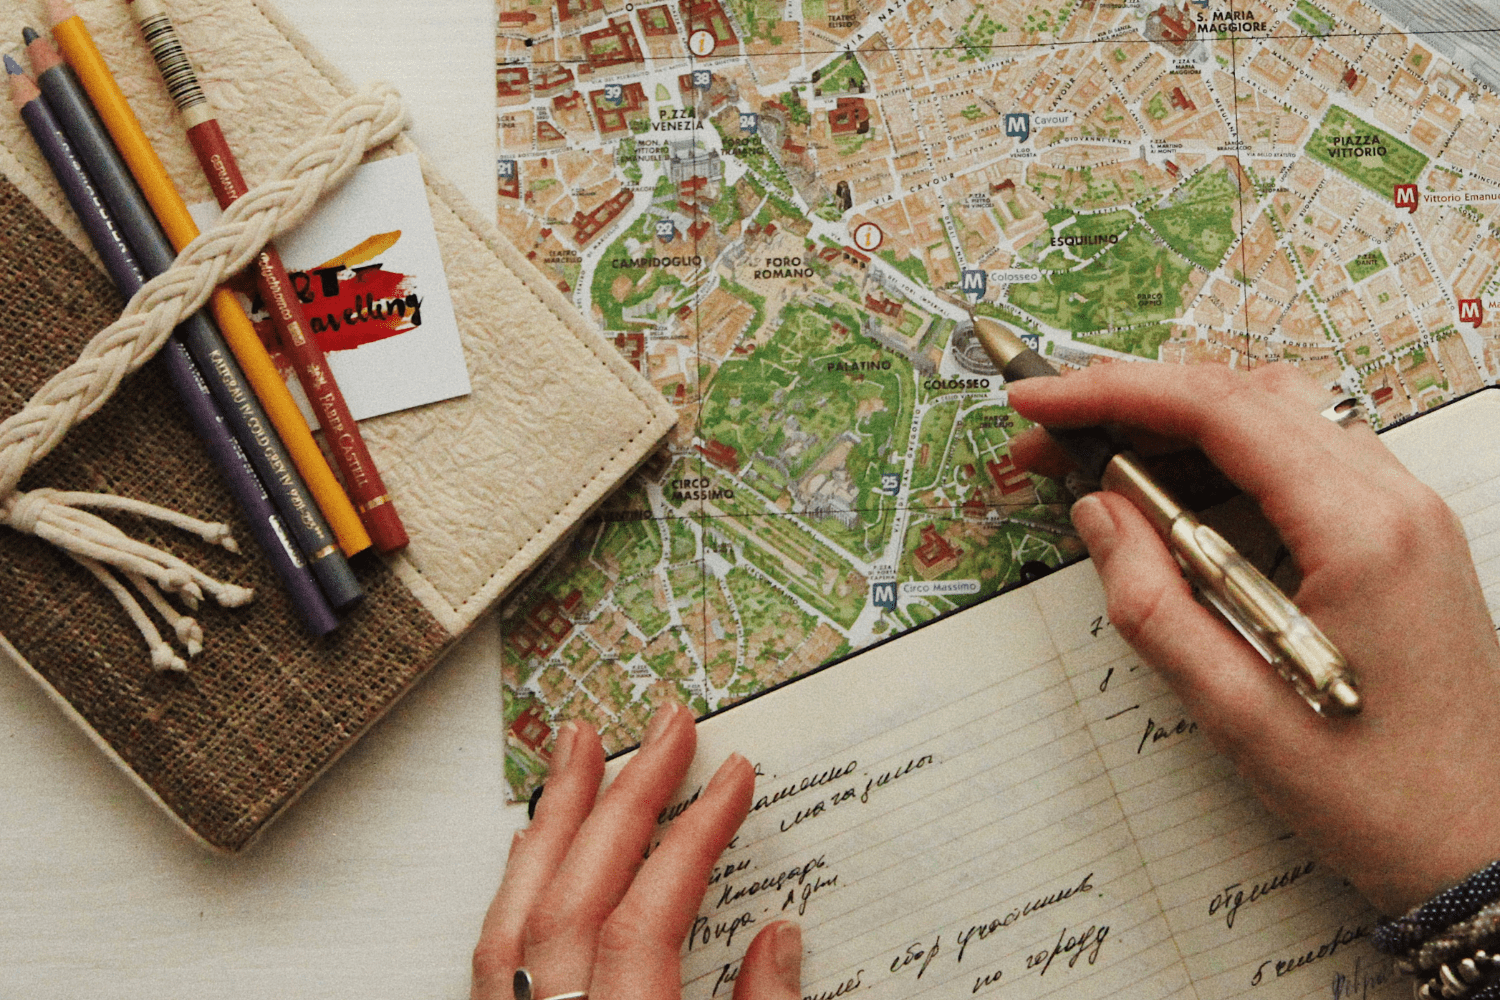 pessoa com um caderno e mapa checklist de viagem internacional